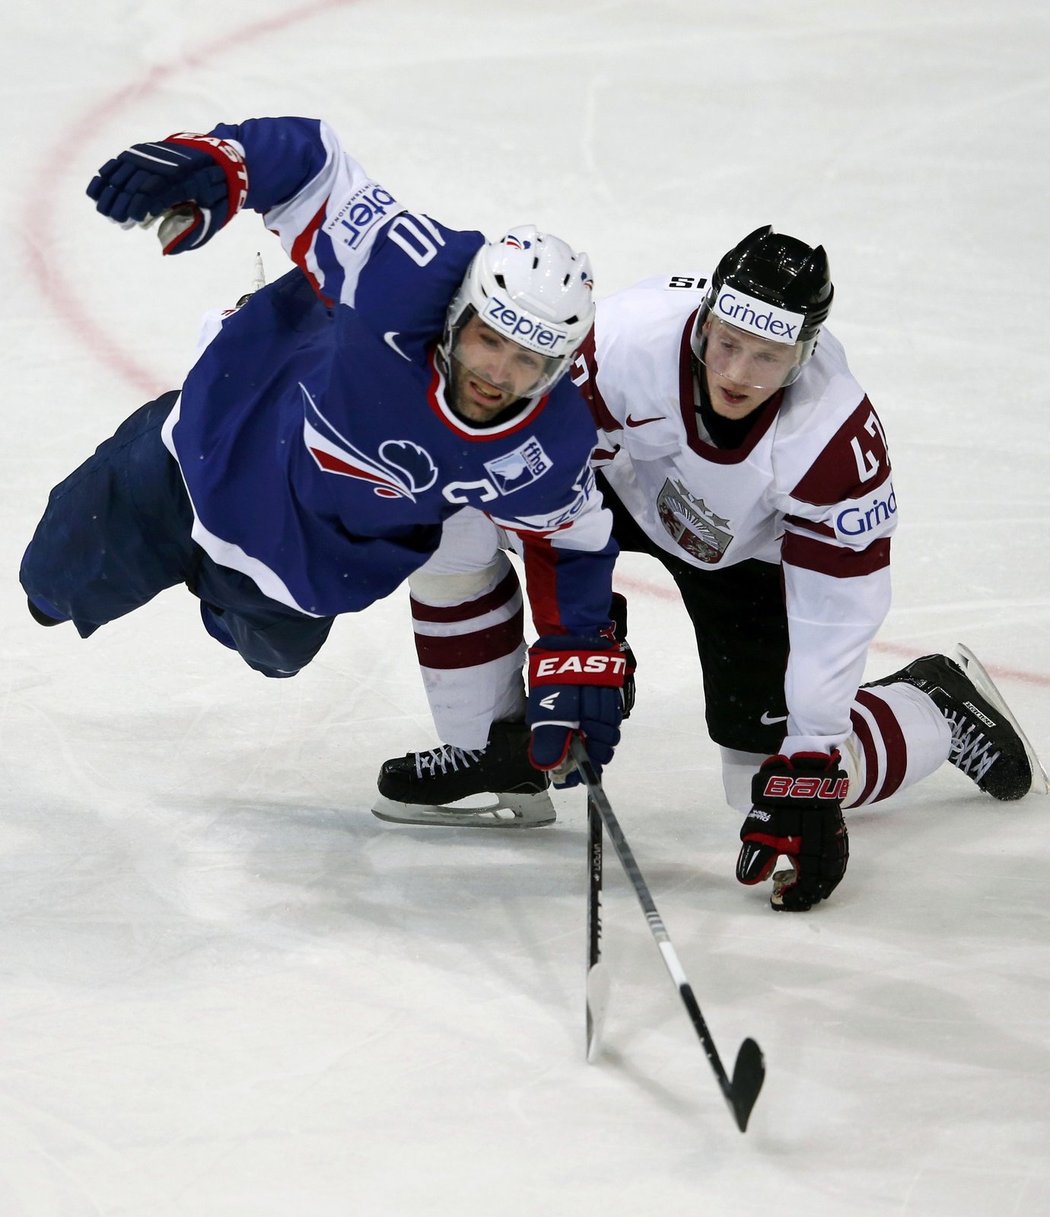 Hokejsité Lotyšska vyhráli na MS nad Francií 3:1 a potěšili tím kromě vlastních fanoušků i hokejisty Slovenska